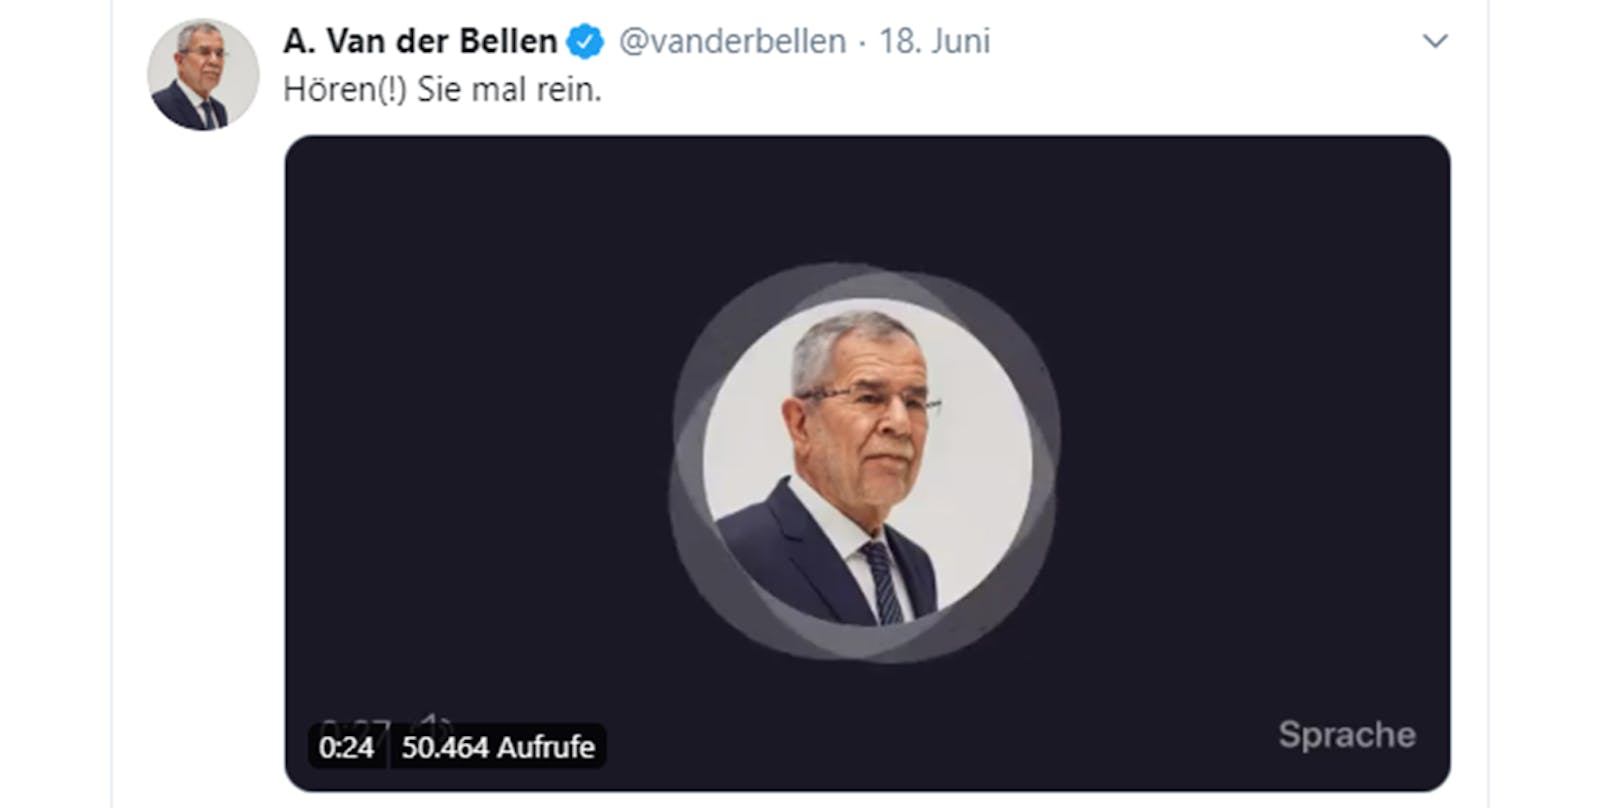 140 Sekunden lang kann man seine Stimme aufnehmen und anschließend mit seinen Followern teilen. Alexander Van der Bellen hat es bereits getan.